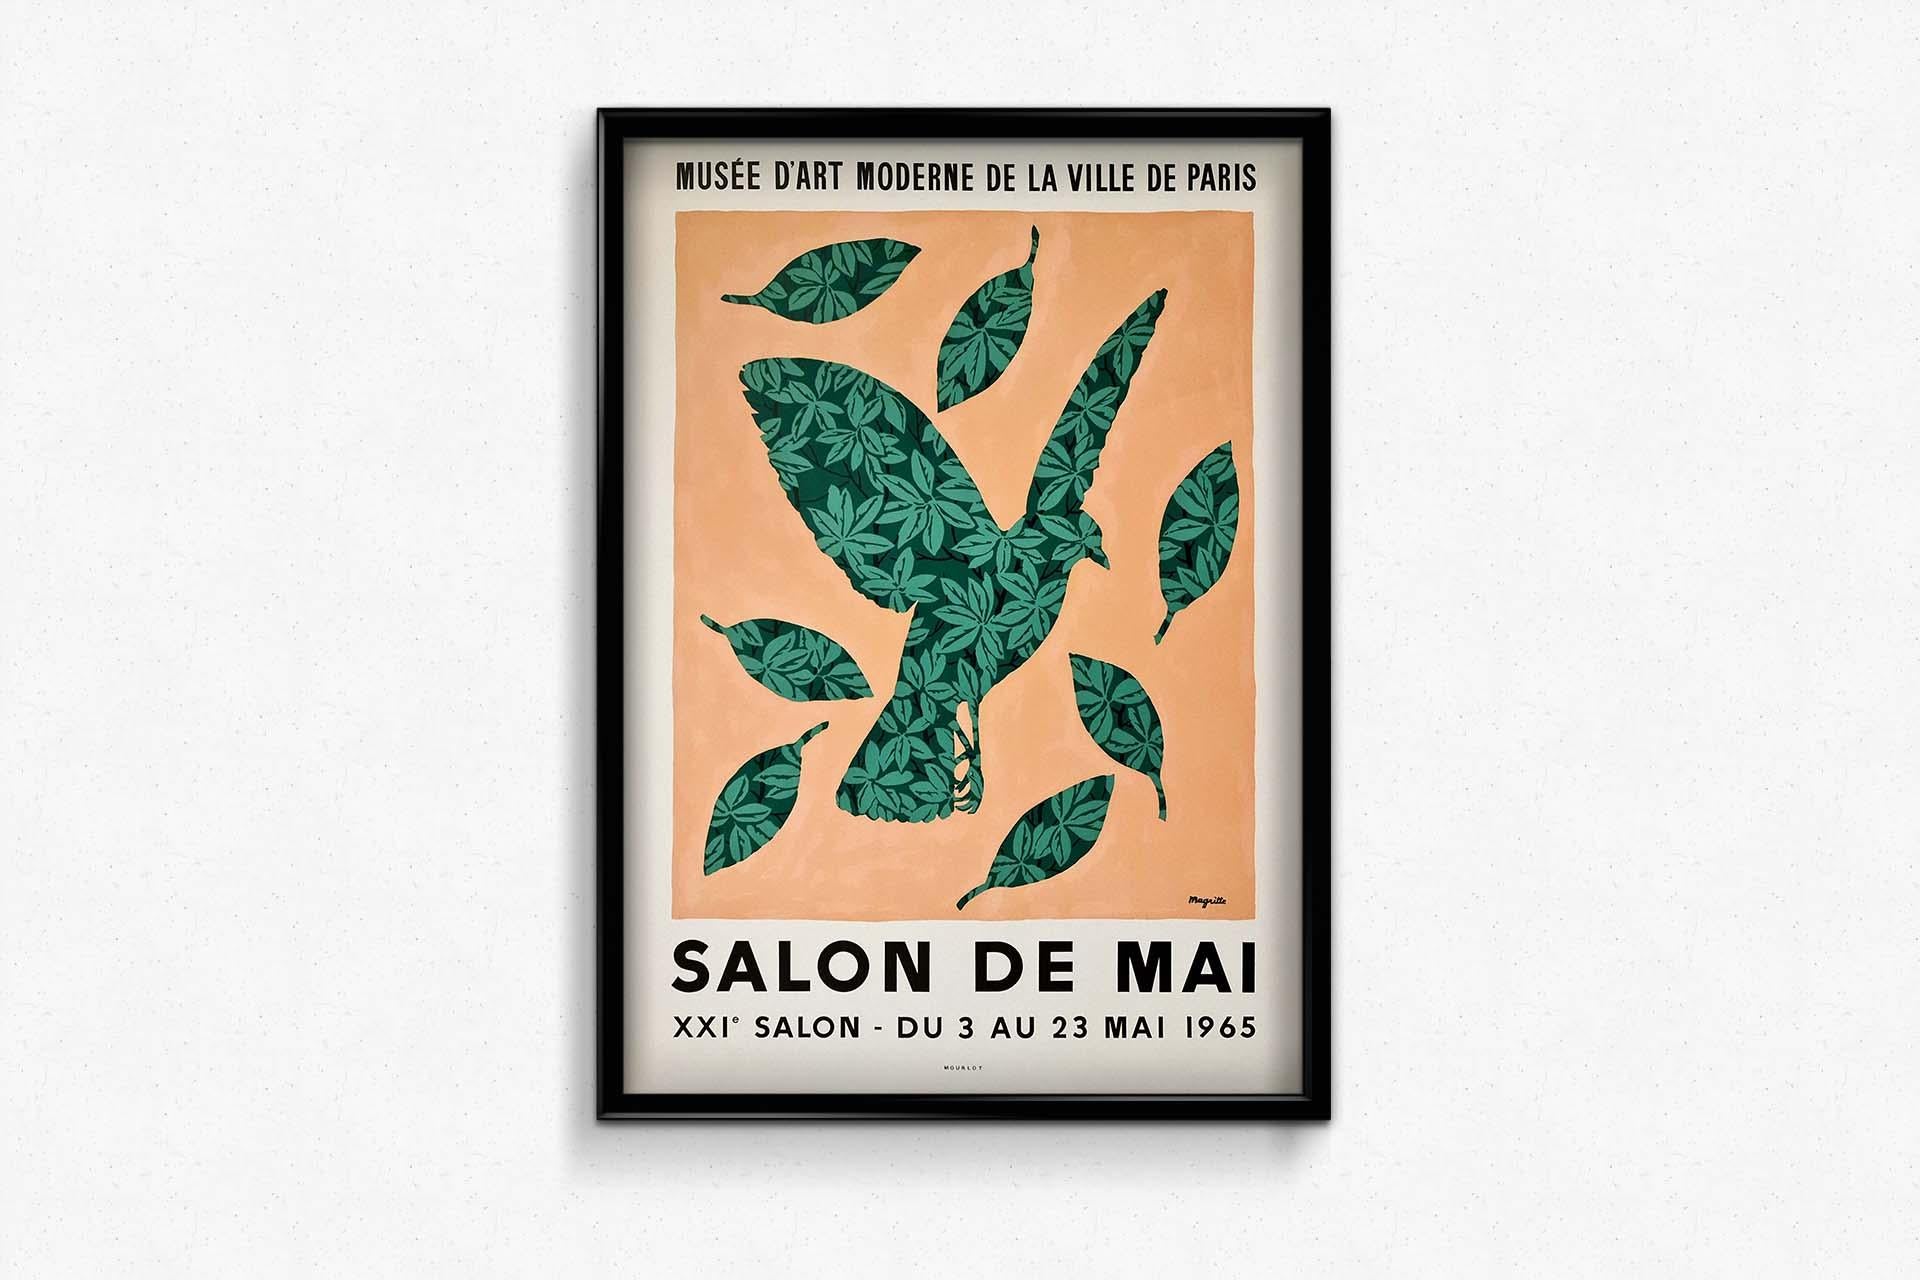 Das Originalplakat von Magritte für den Salon de Mai 1965 ist ein ikonisches Kunstwerk, das den Einfallsreichtum und die surrealistische Ästhetik des berühmten belgischen Künstlers René Magritte widerspiegelt. Dieses Plakat, das eigens für seine